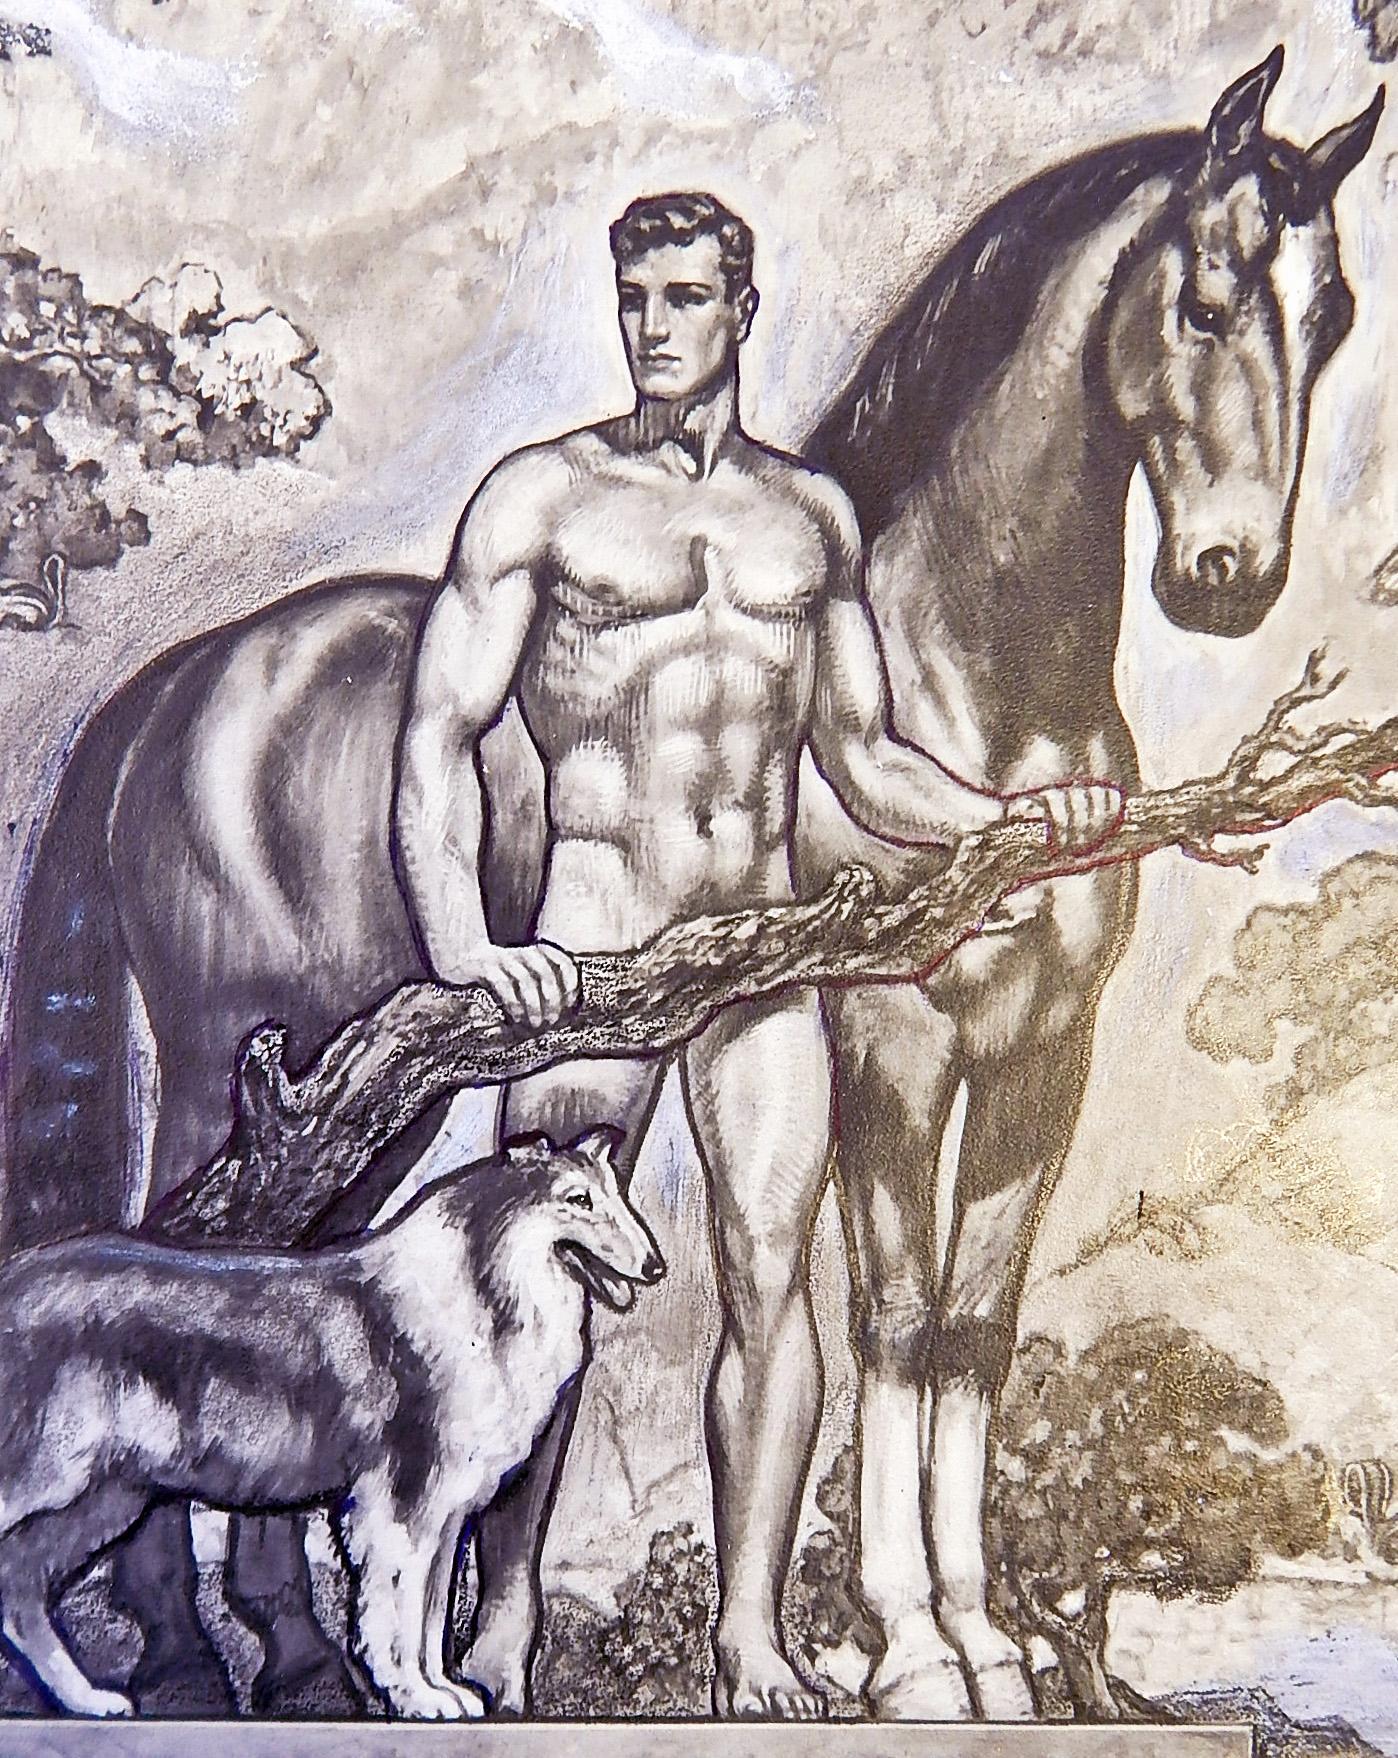 À notre connaissance, cette étude est la seule image connue de cette peinture murale, créée par John Garth pour montrer un homme idéalisé au travail et au jeu, tous nus ou semi-nus, et accompagnés d'animaux allant du Colli et du cheval à l'écureuil